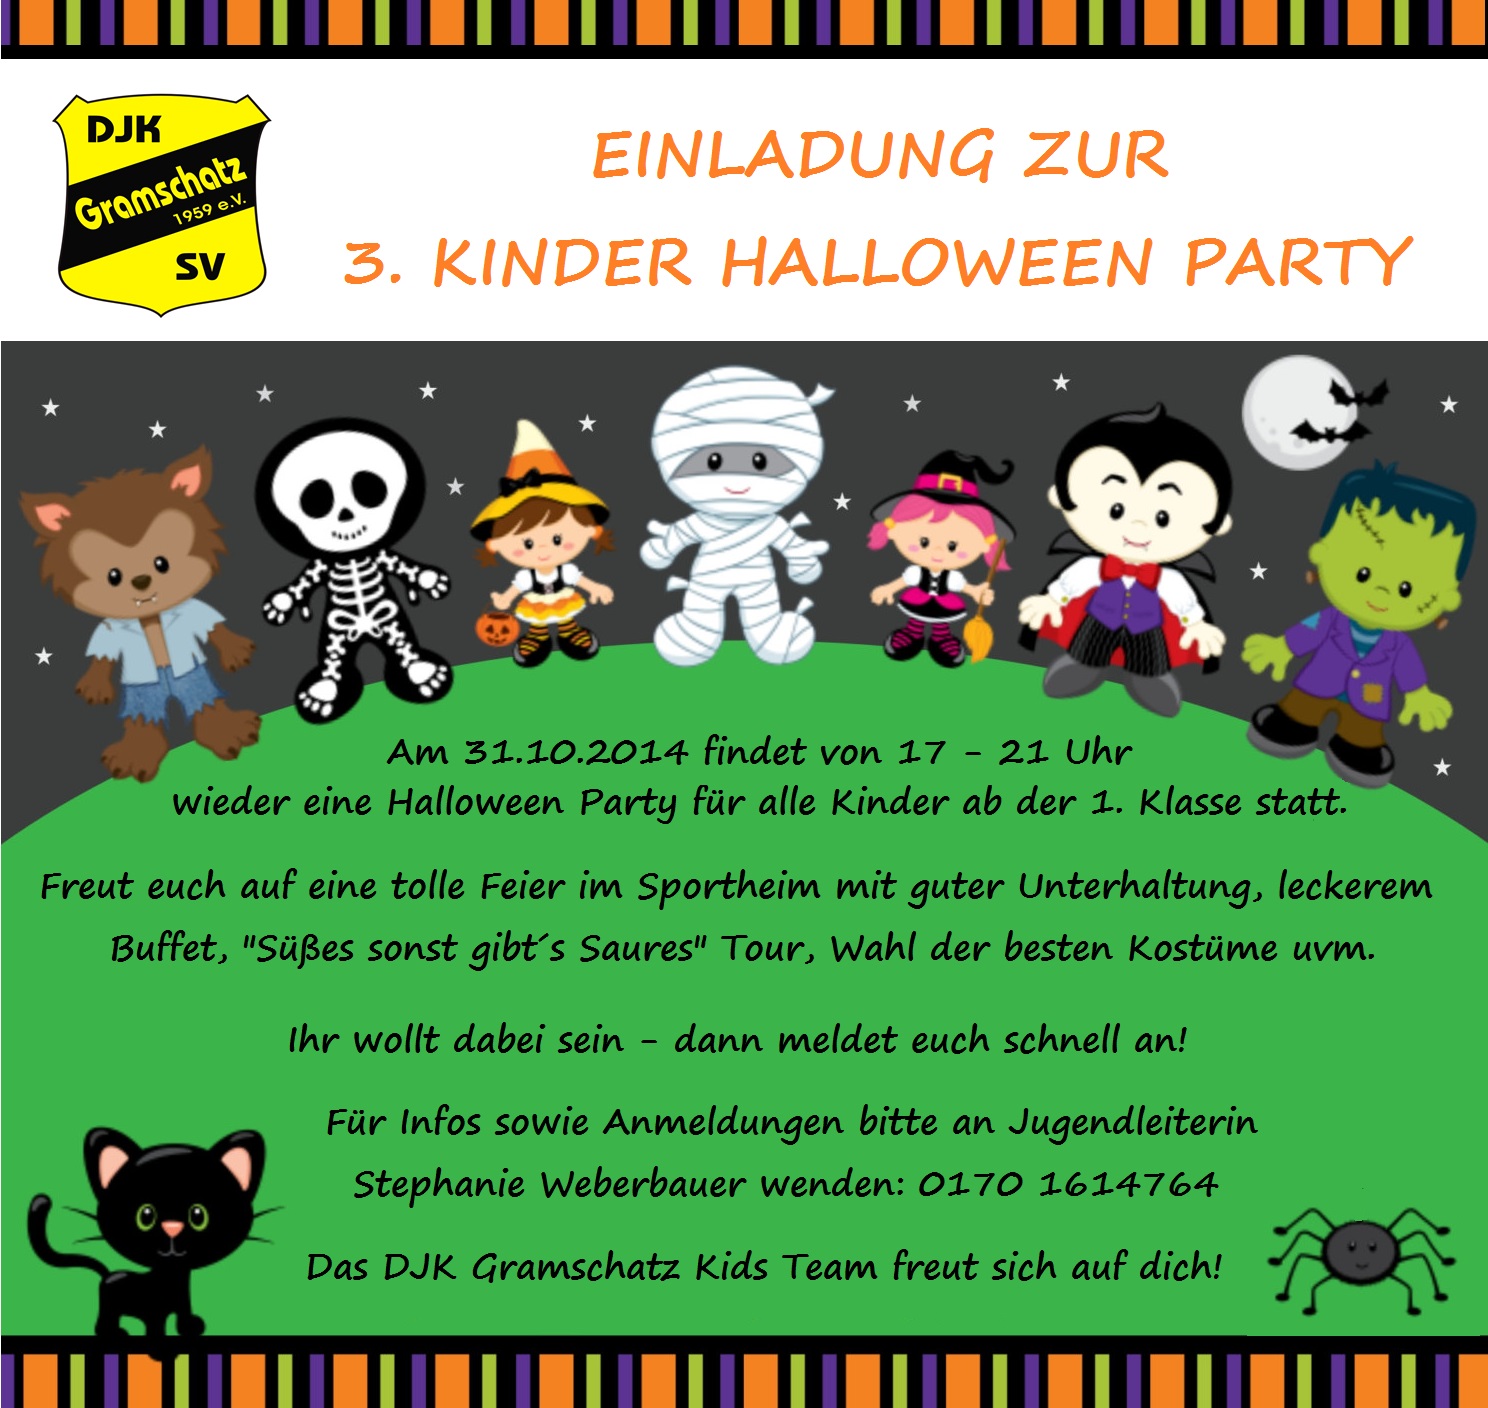 Einladung Zur 3 Kinder Halloween Party Djk Gramschatz